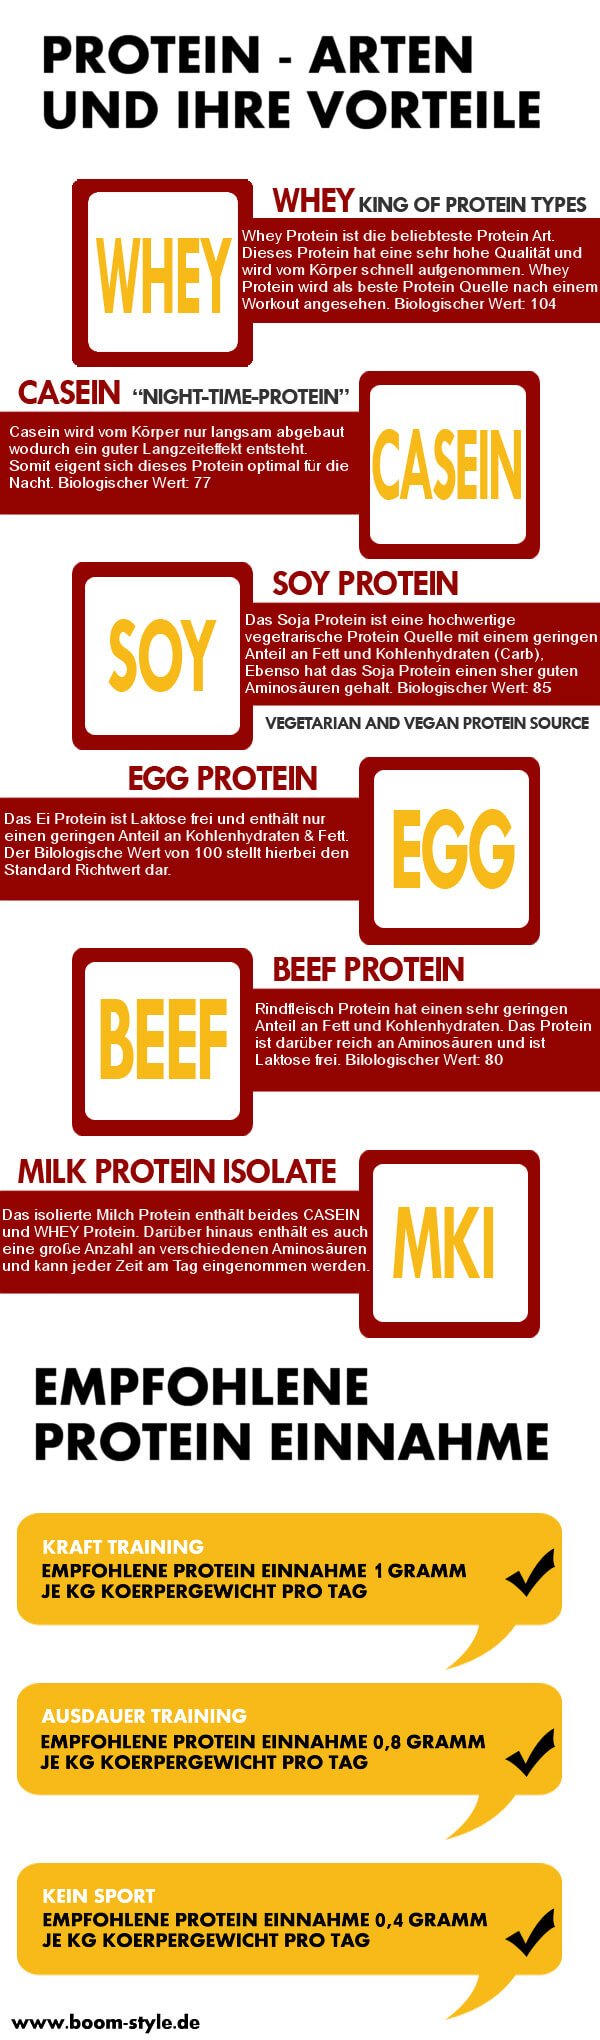 Infografik - Proteine - Arten